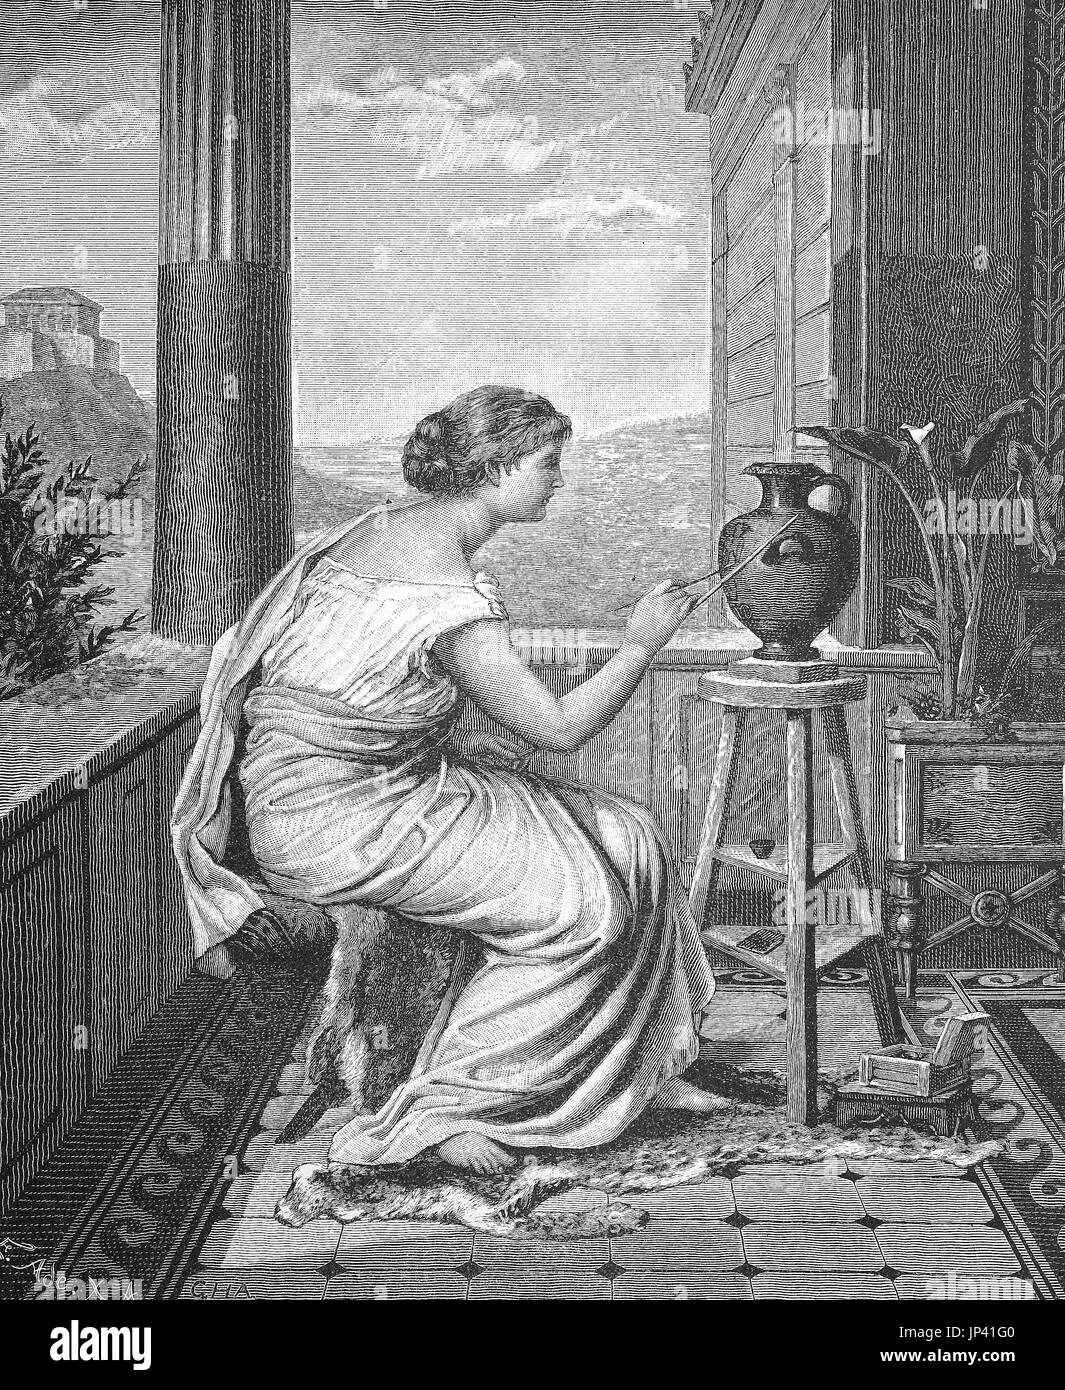 Peintre, artiste, jeune femme grecque a peint un vase, une amélioration numérique reproduction d'une gravure sur bois à partir de la publication de l'année 1888 Banque D'Images